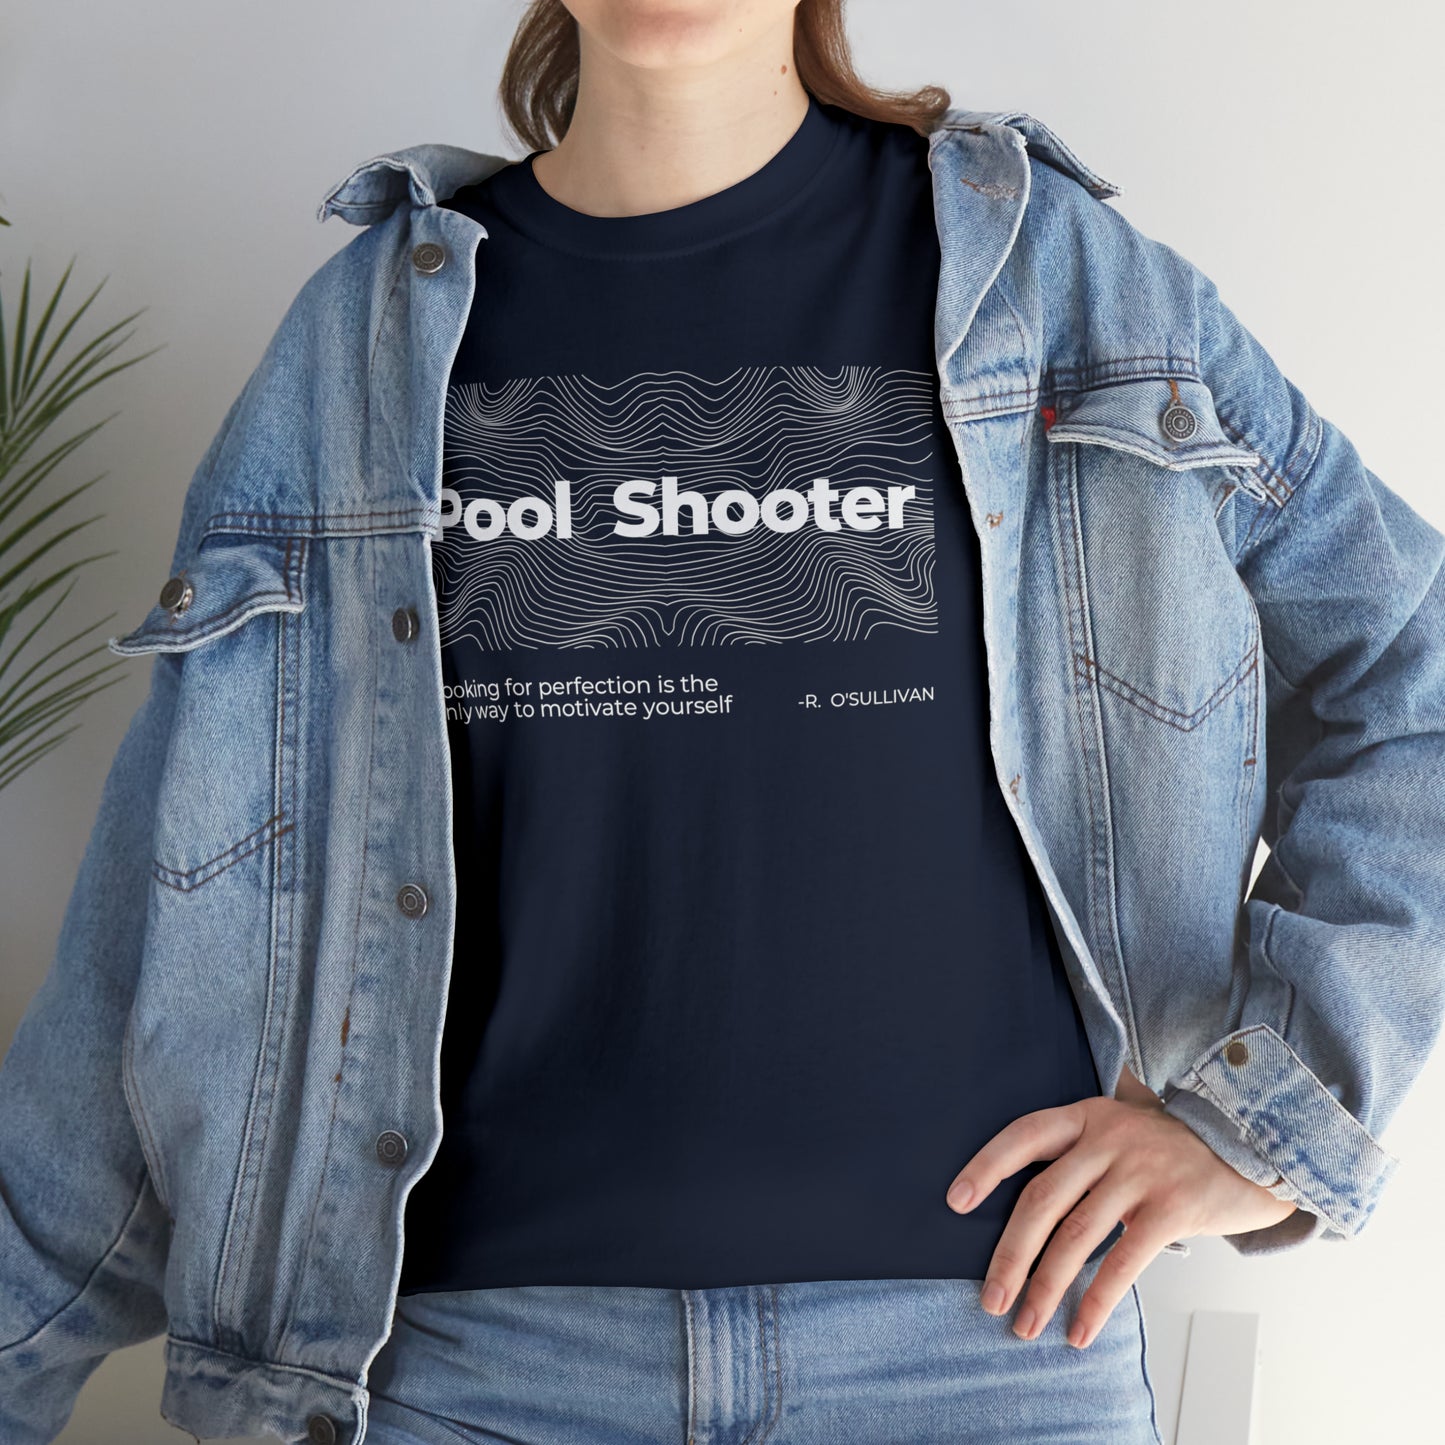 Pool shooter